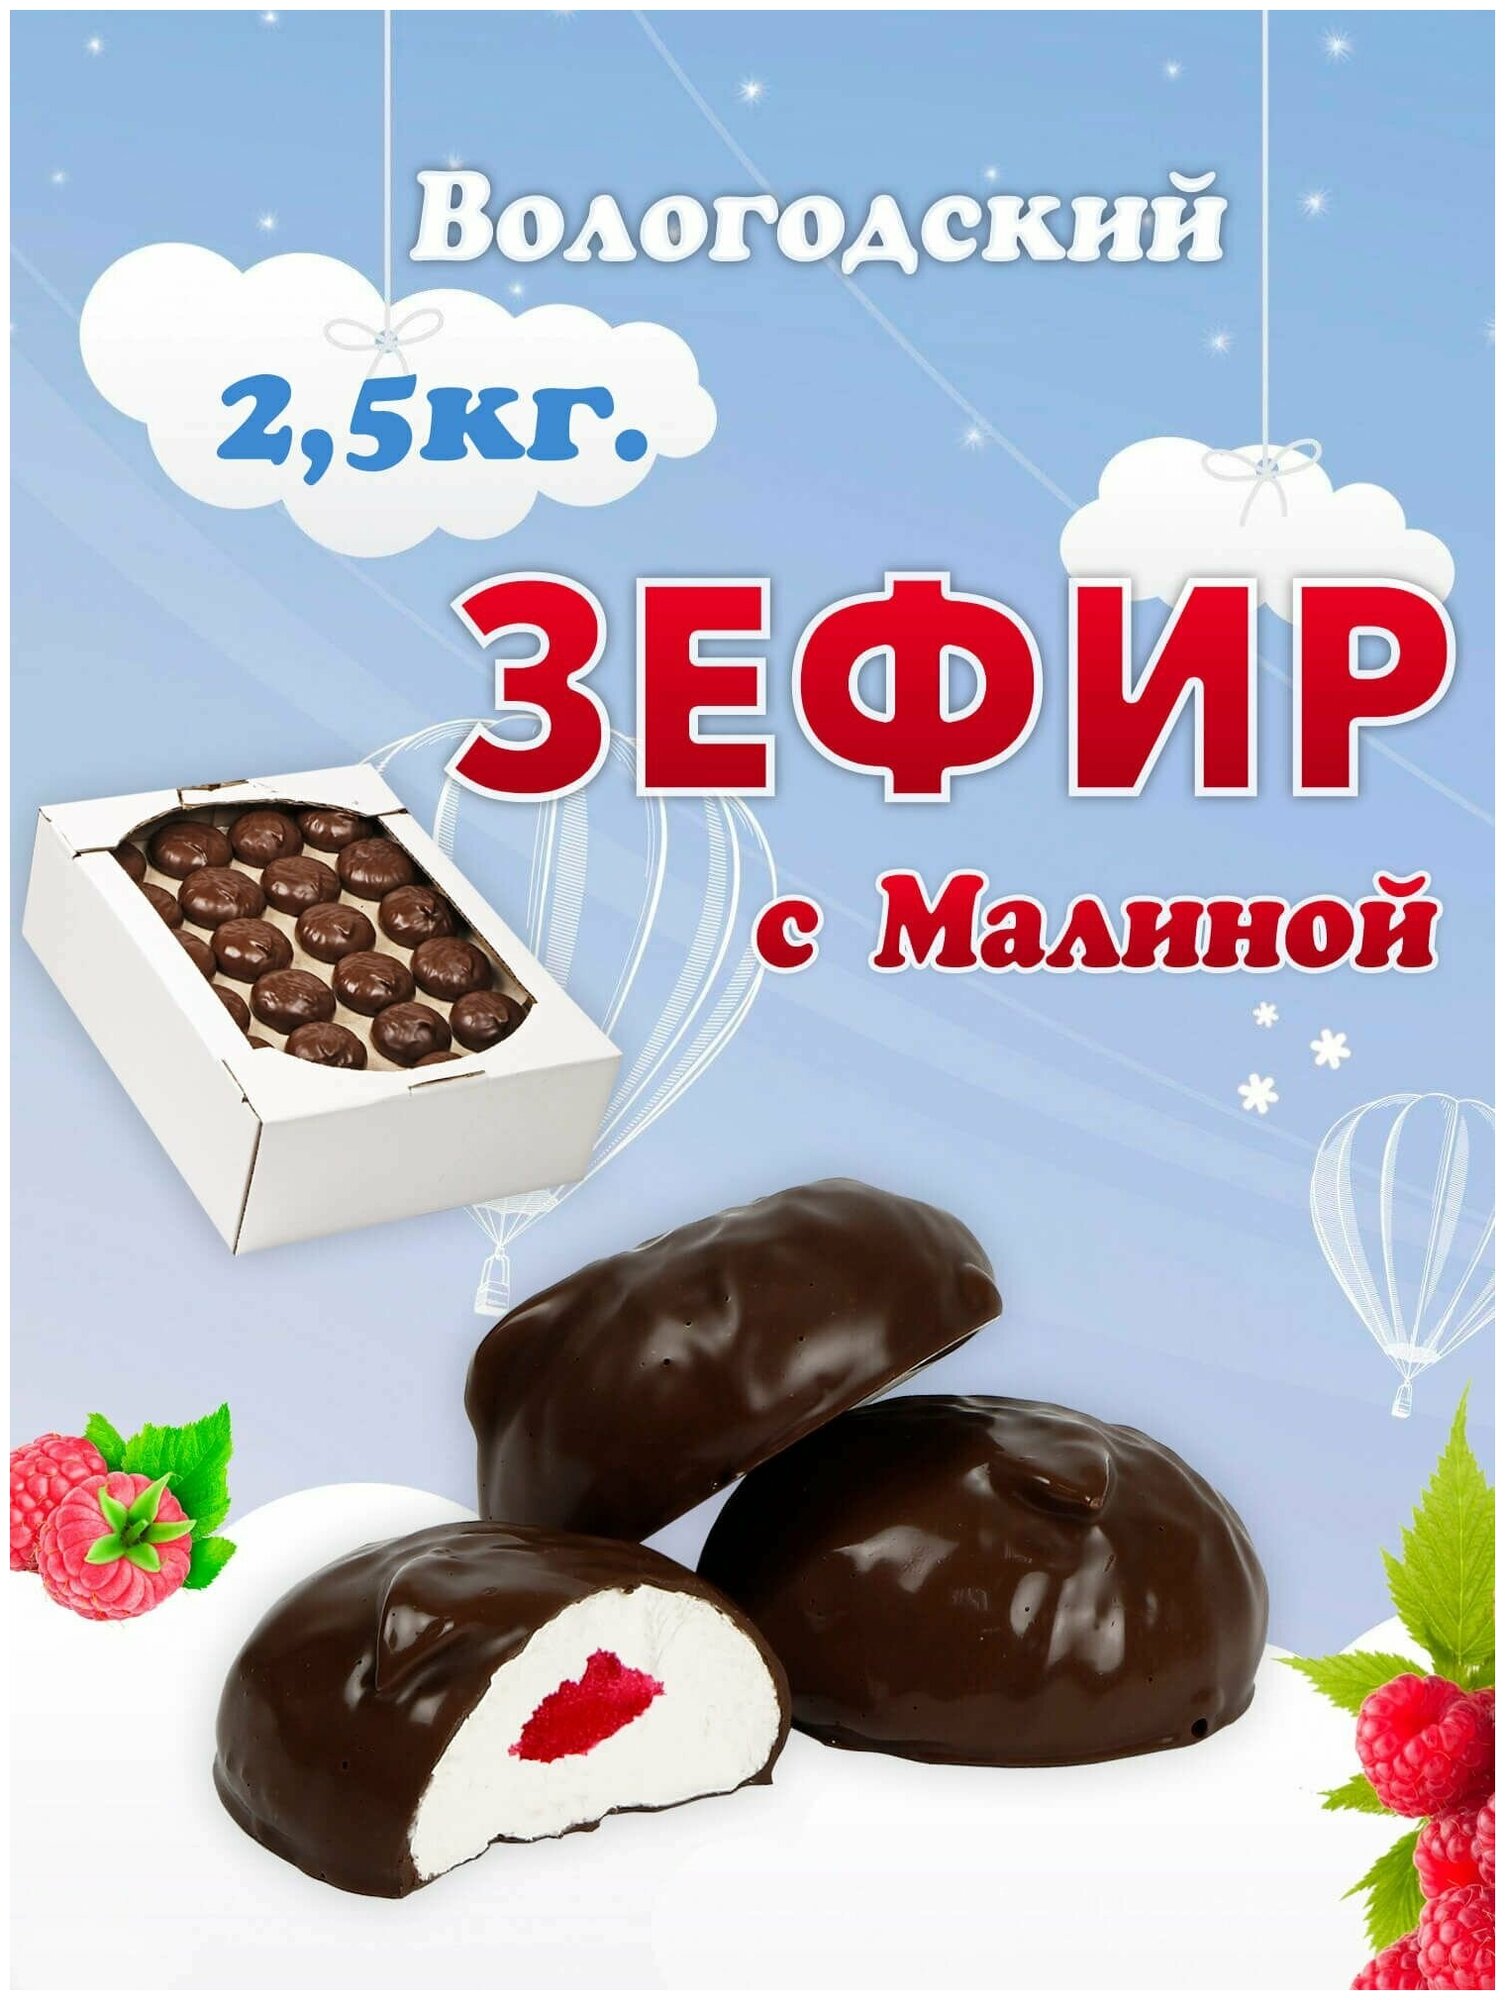 Зефир Вологодский в шоколаде с Малиной 2,5кг.